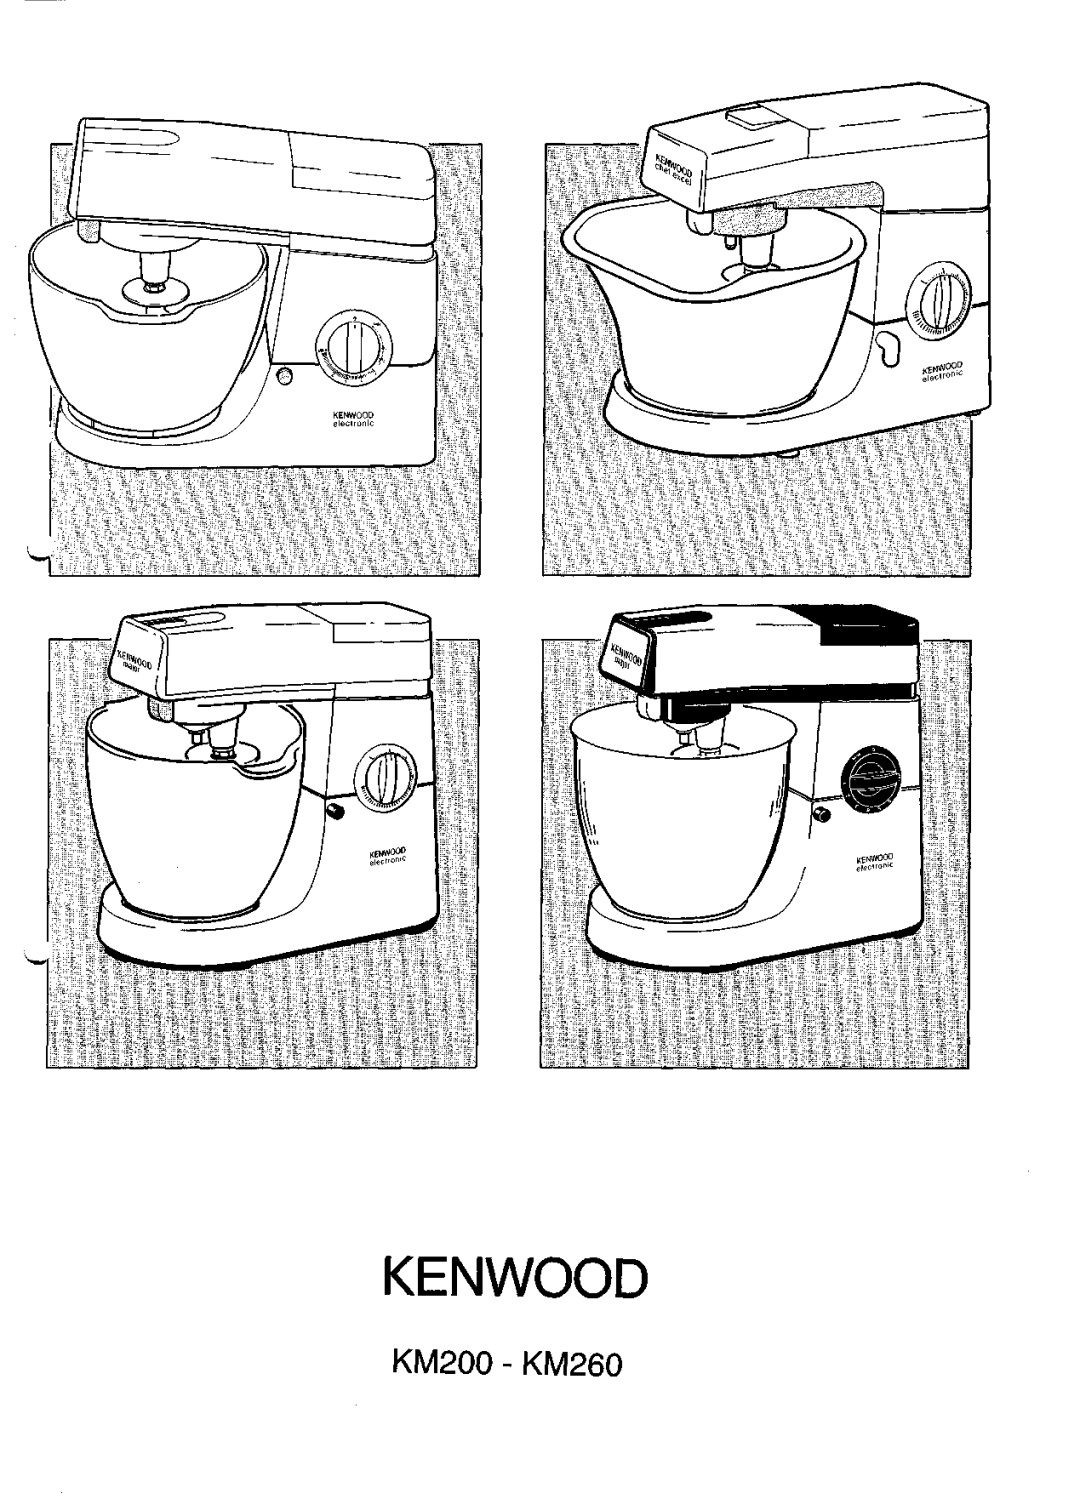 Kenwood manual Kenwood, KM200 - KM260 